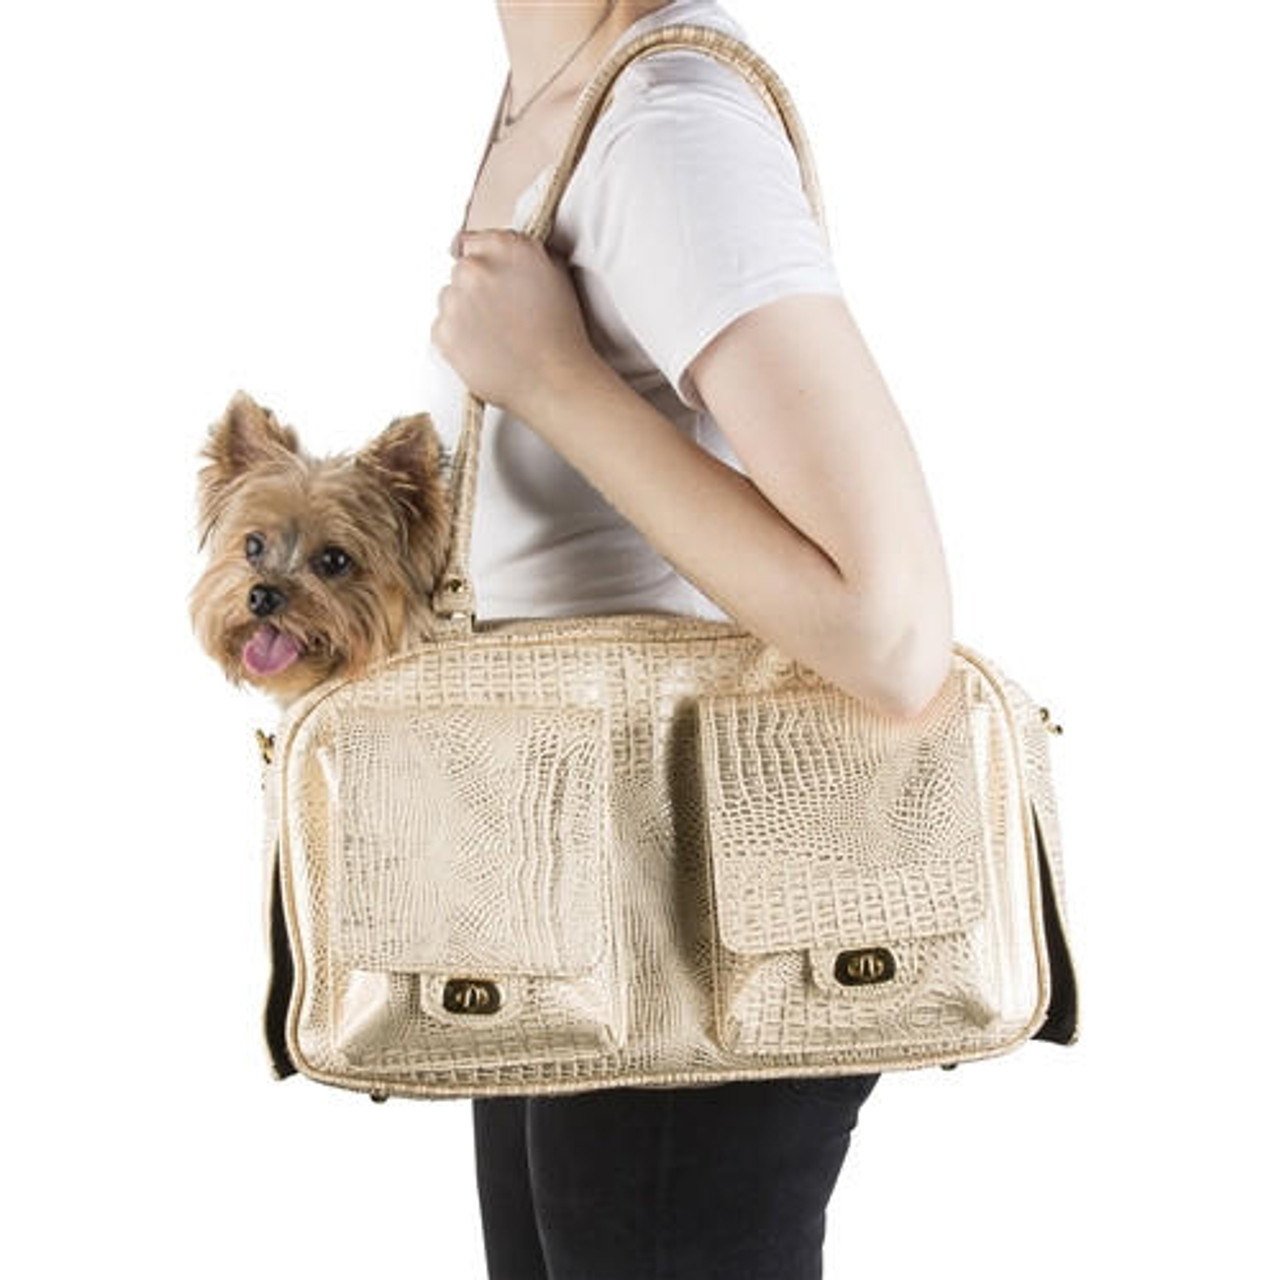 Petote Marlee Bag, Quilted Dog Bag, Designer Dog Bag, Made In The USA Dog  Bag, Purse Dog Bag, Handbag Dog Carrier